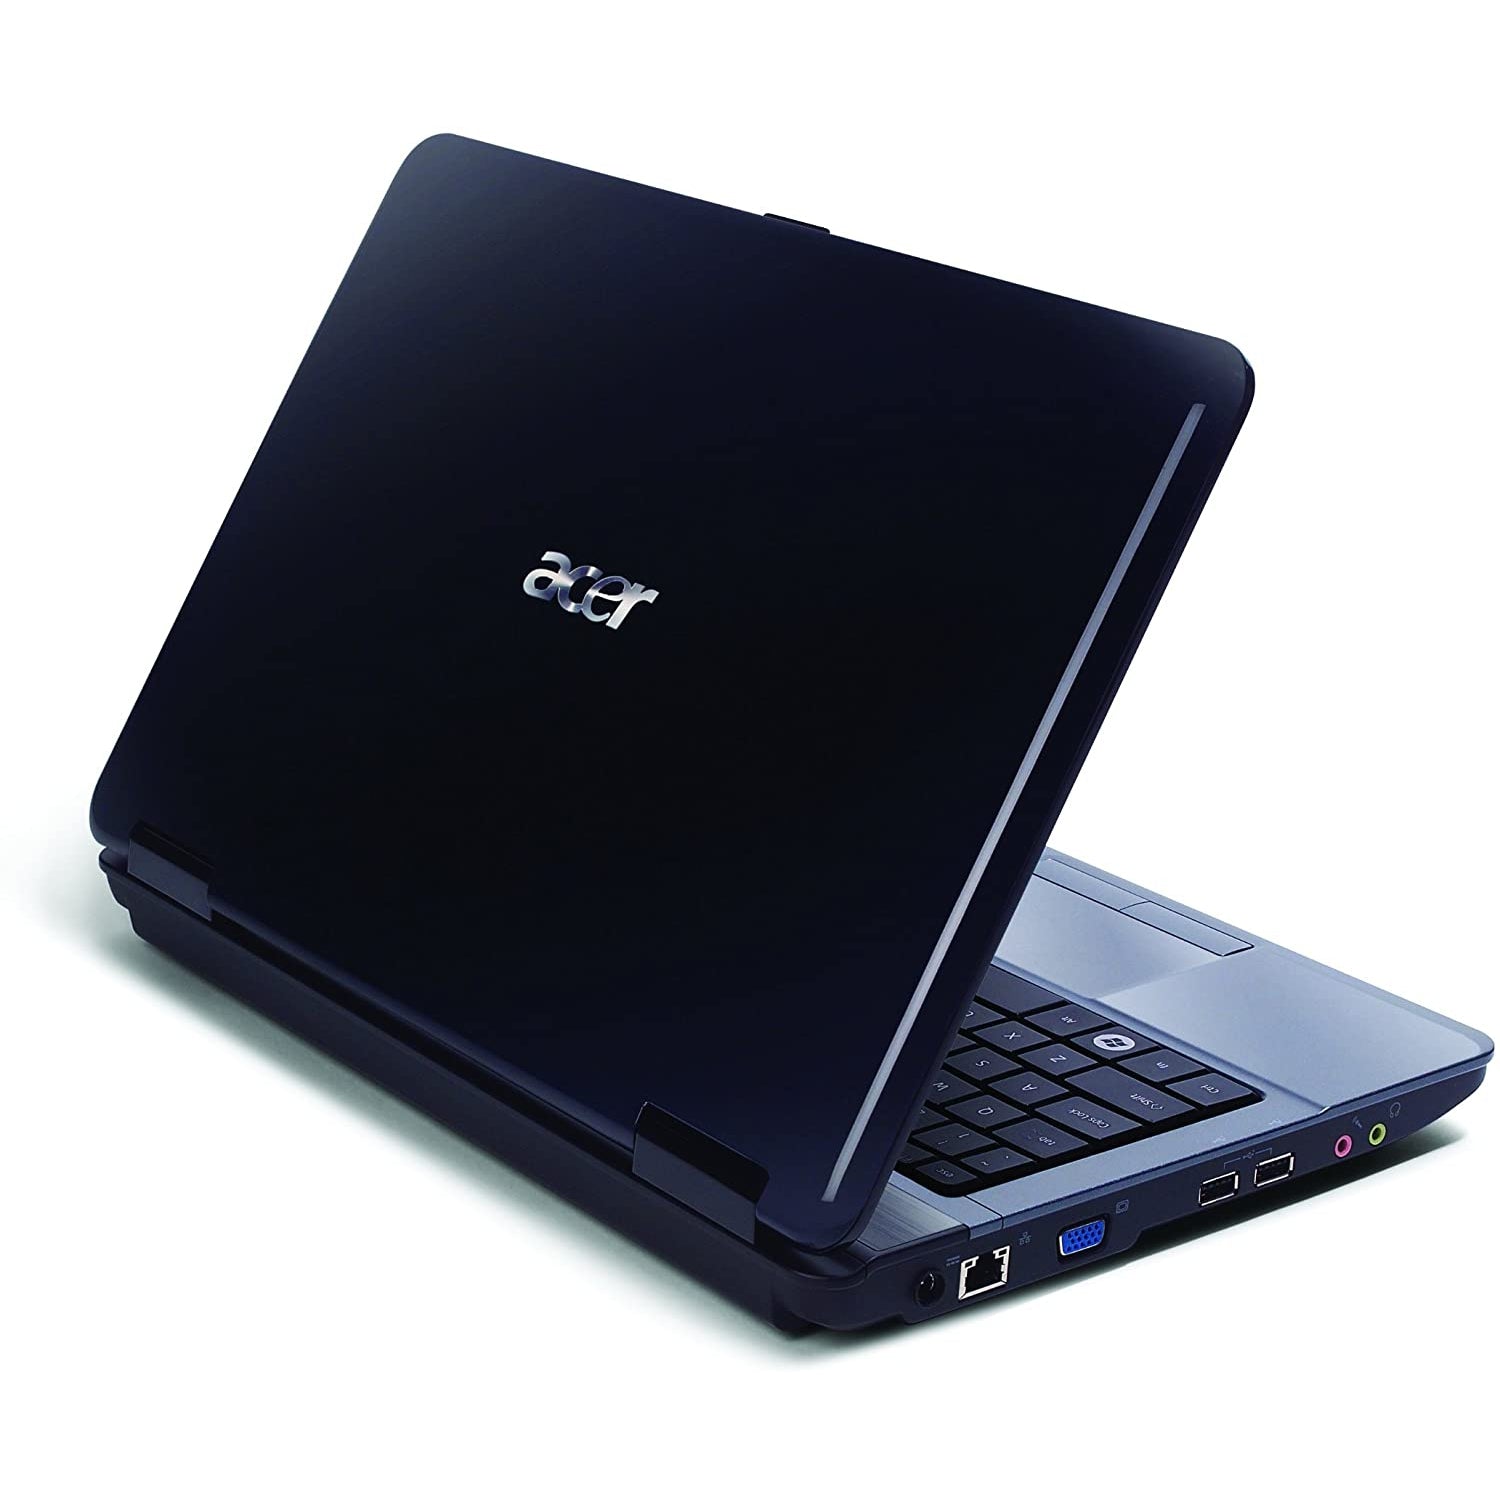 Acer Aspire 5732Z, Intel Pentium, 4GB RAM, 160GB HDD, 15.6" - Blue